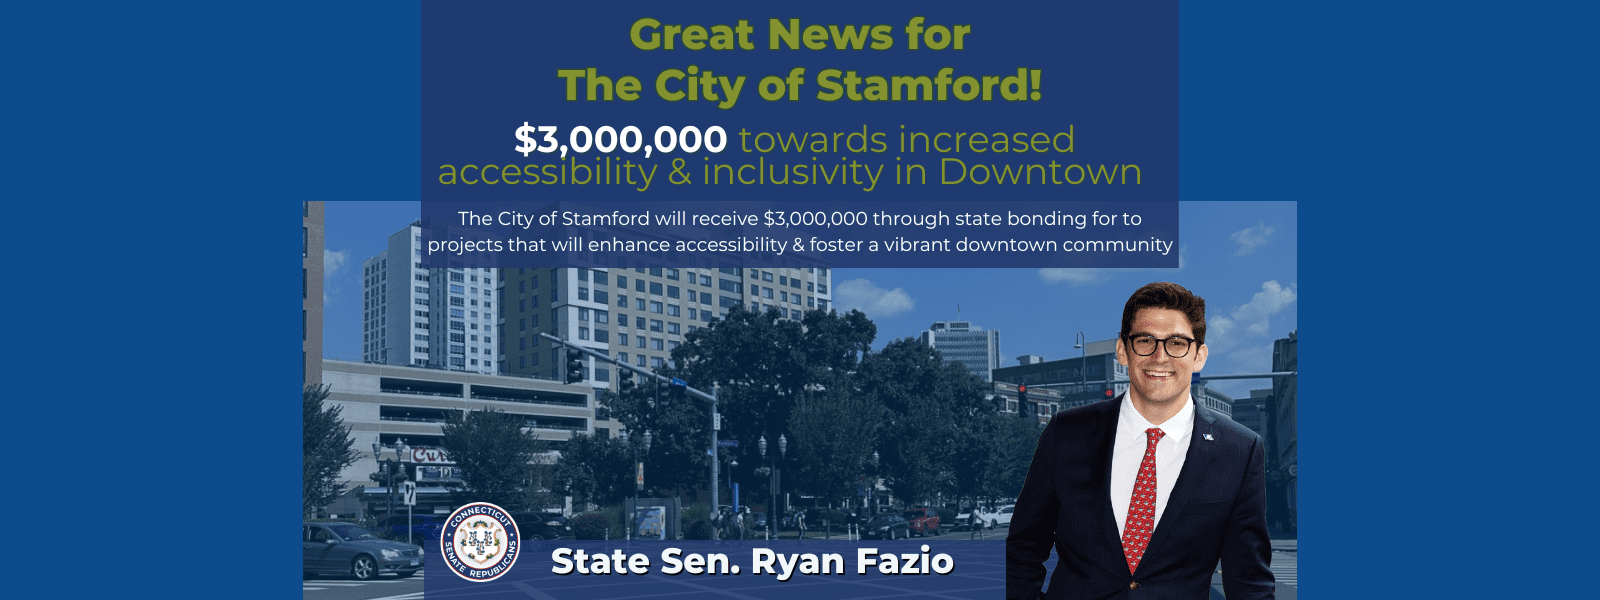 Senator Fazio Celebrates $3 Million for Increased  Accessibility & Inclusivity in Downtown Stamford